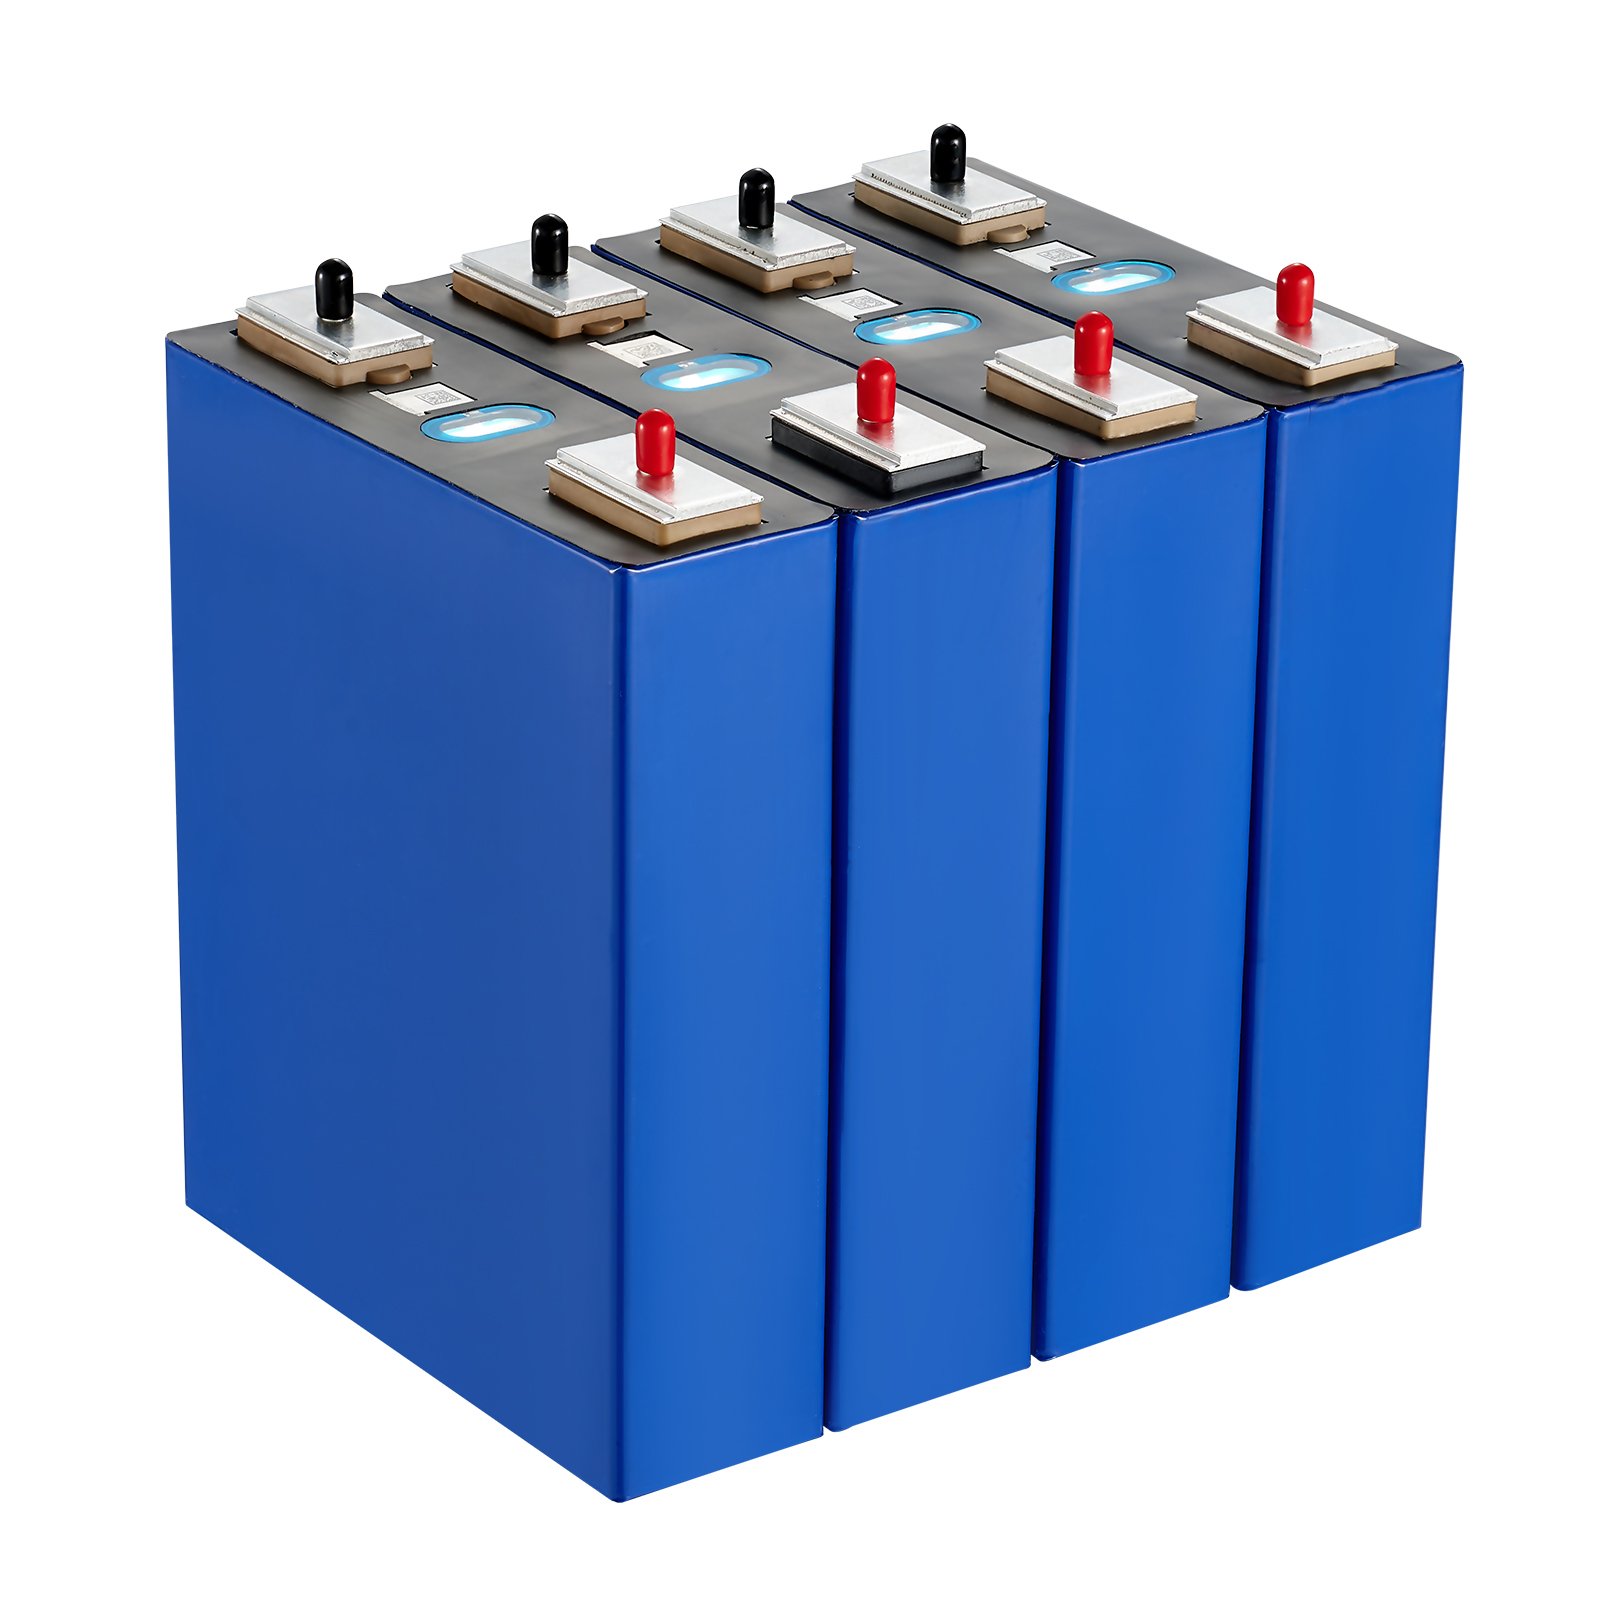 LFP Battery Cells